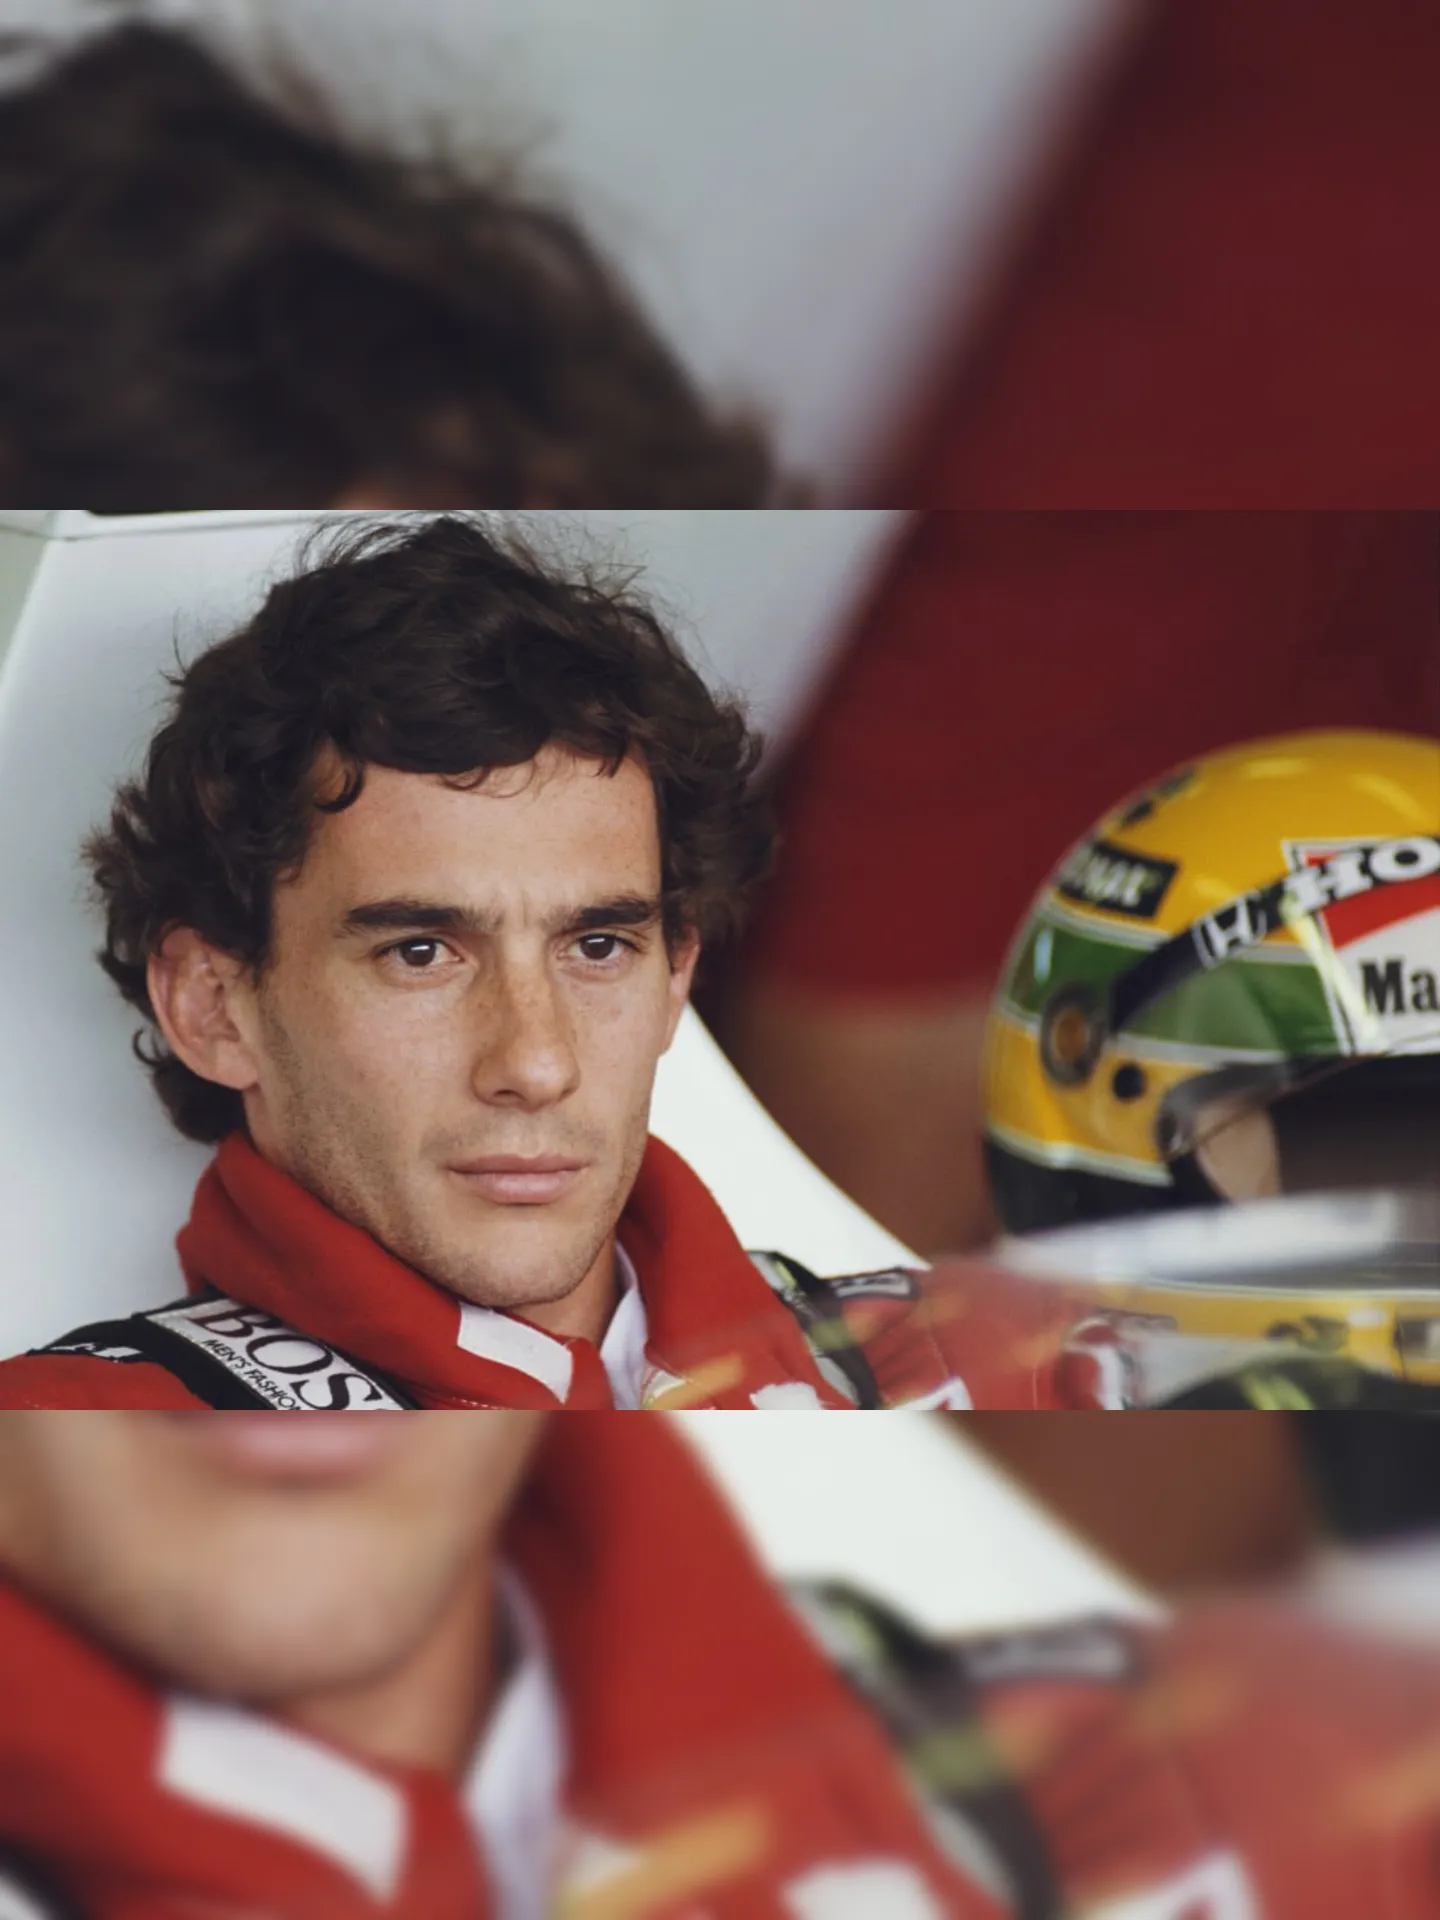 O nome de Senna foi um dos mais comentados no Google nesta quinta